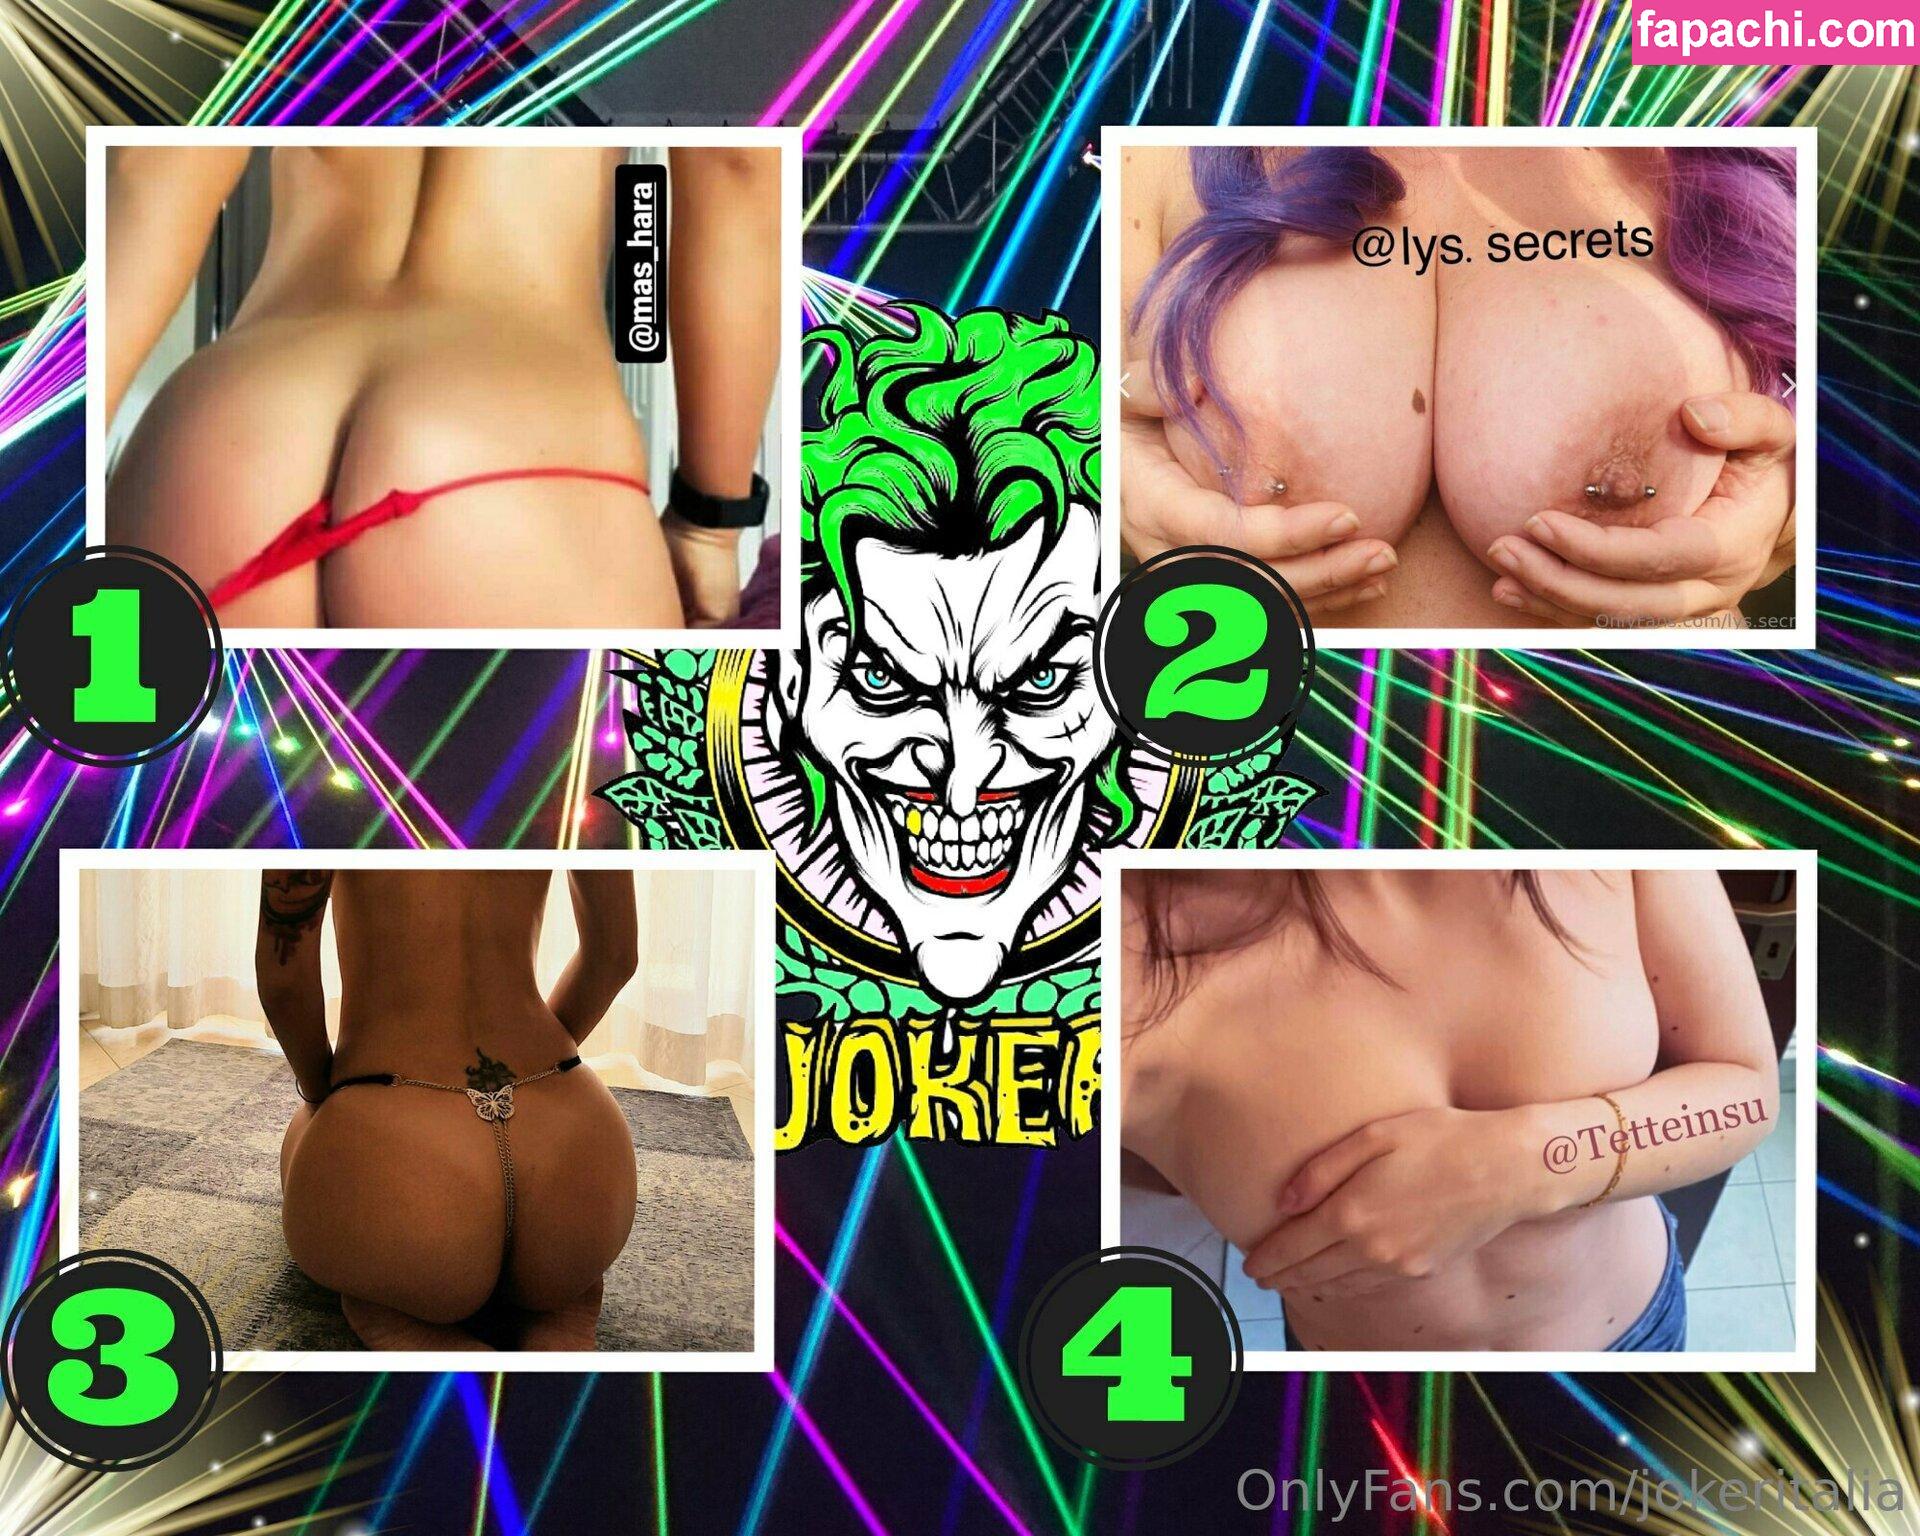 jokeritalia / jokeritalia_ofc leaked nude photo #0394 from OnlyFans/Patreon